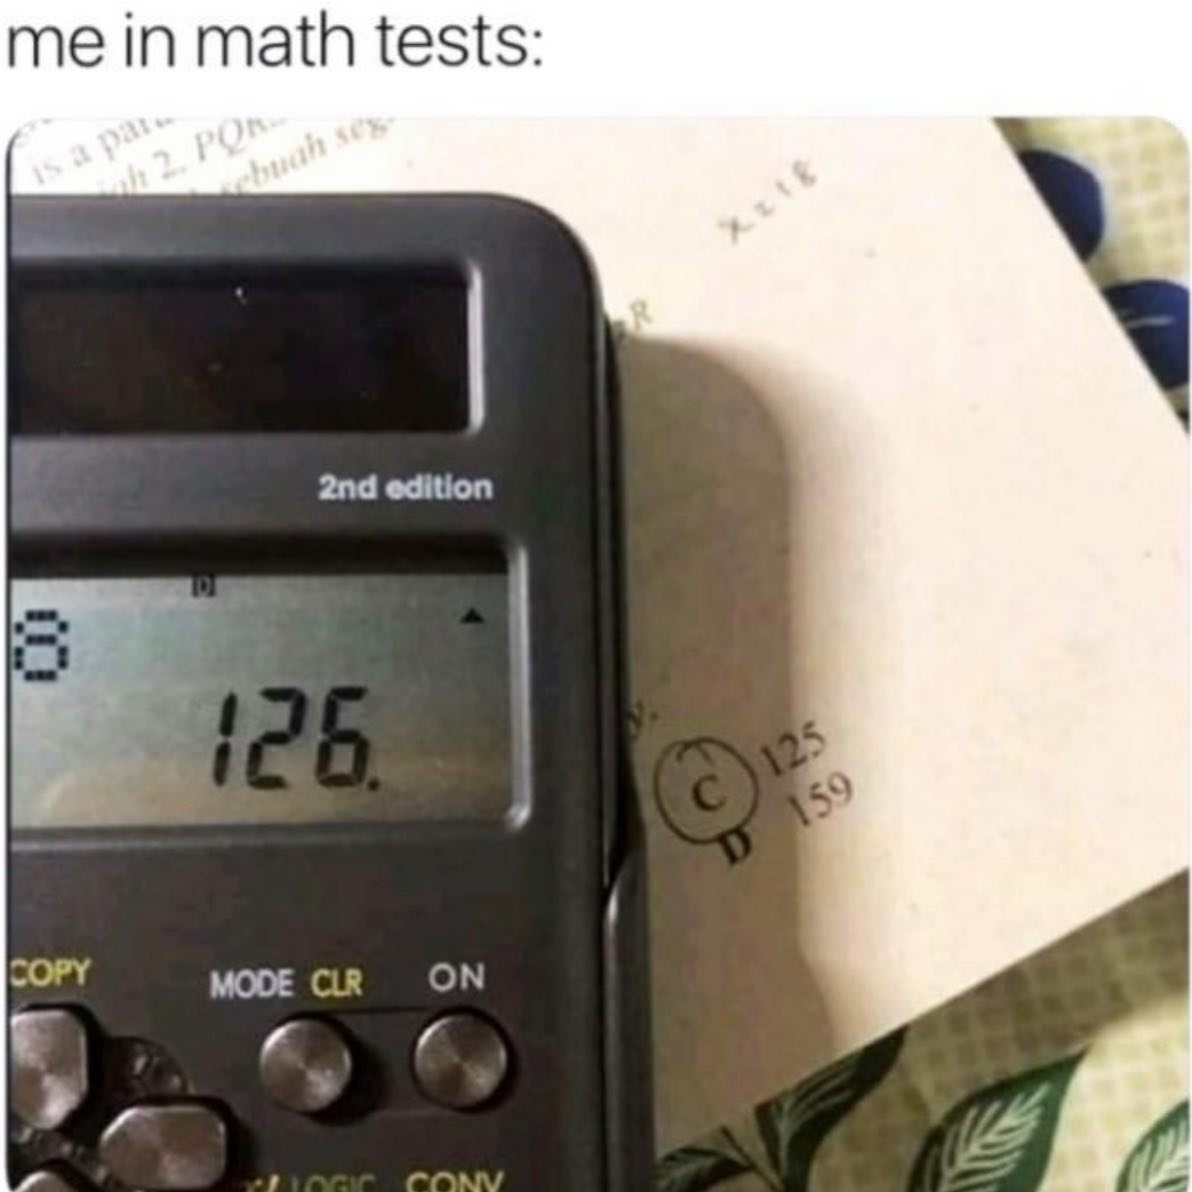 dank memes - me in math tests is a par 2. Por sebuah sex R 2nd edition 126. C 125 D 159 Copy Mode Clr On Logic Cony